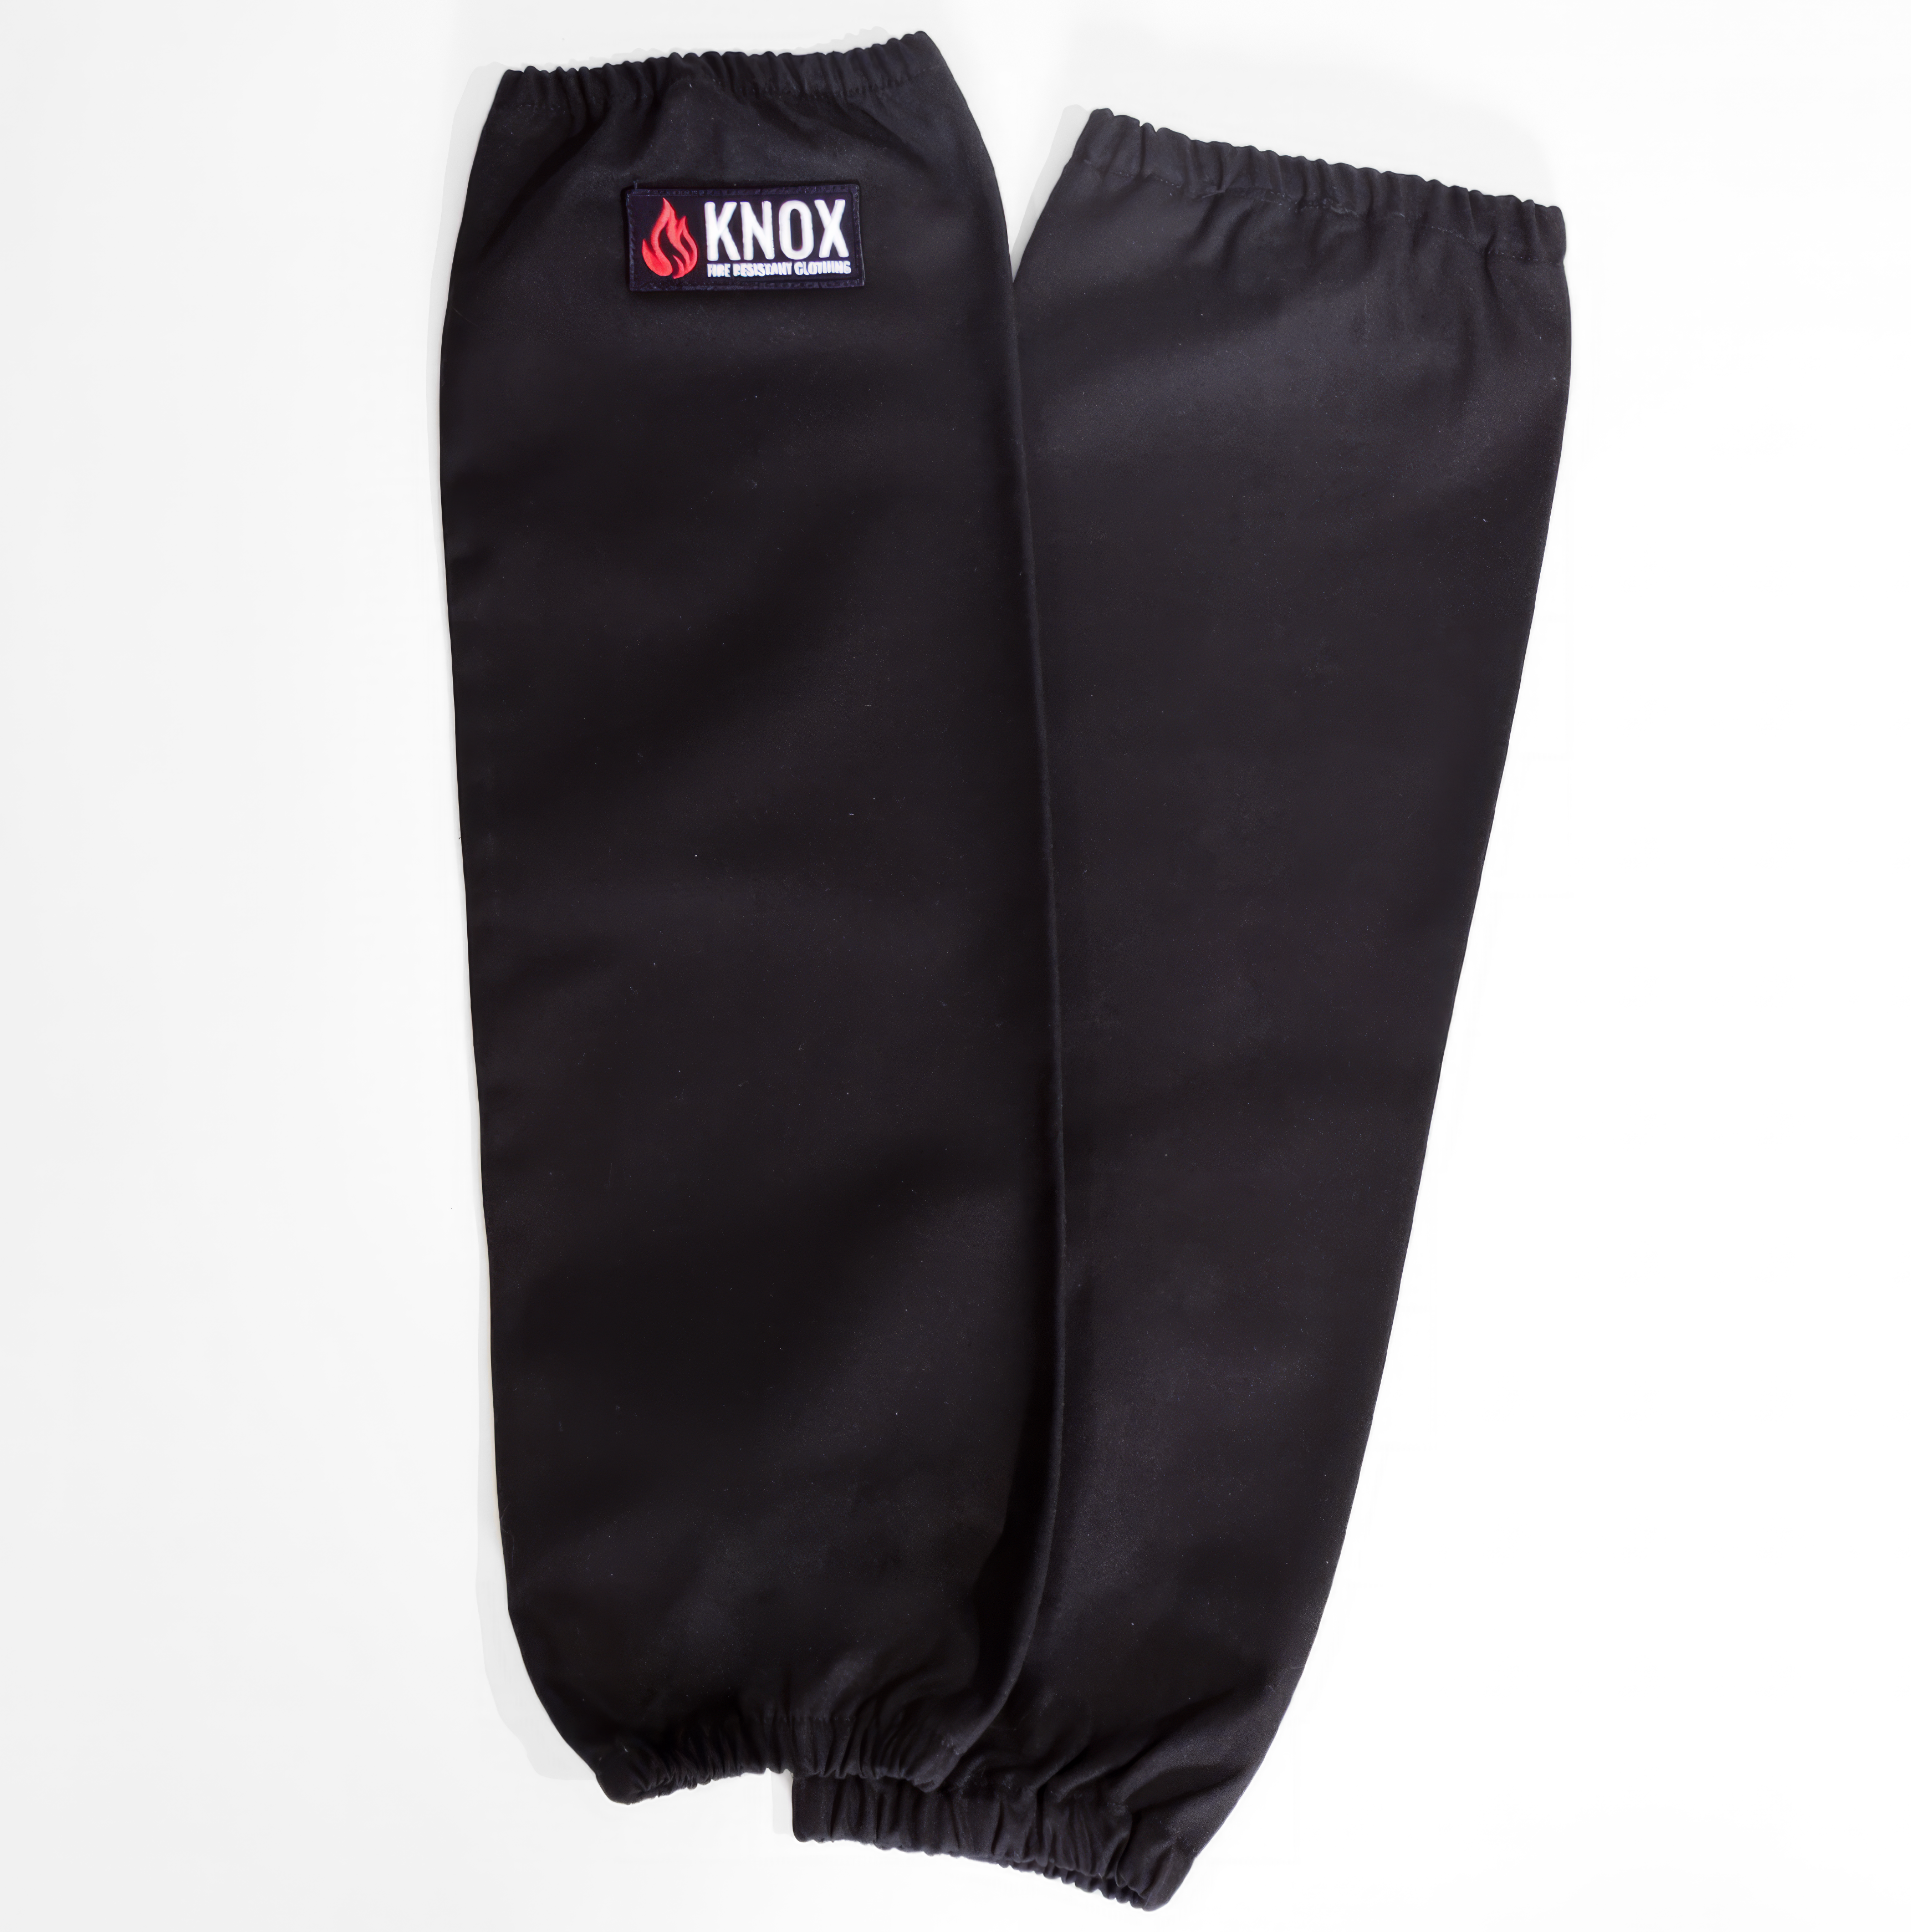 Knox FR Welding Arm Sleeves (Black)